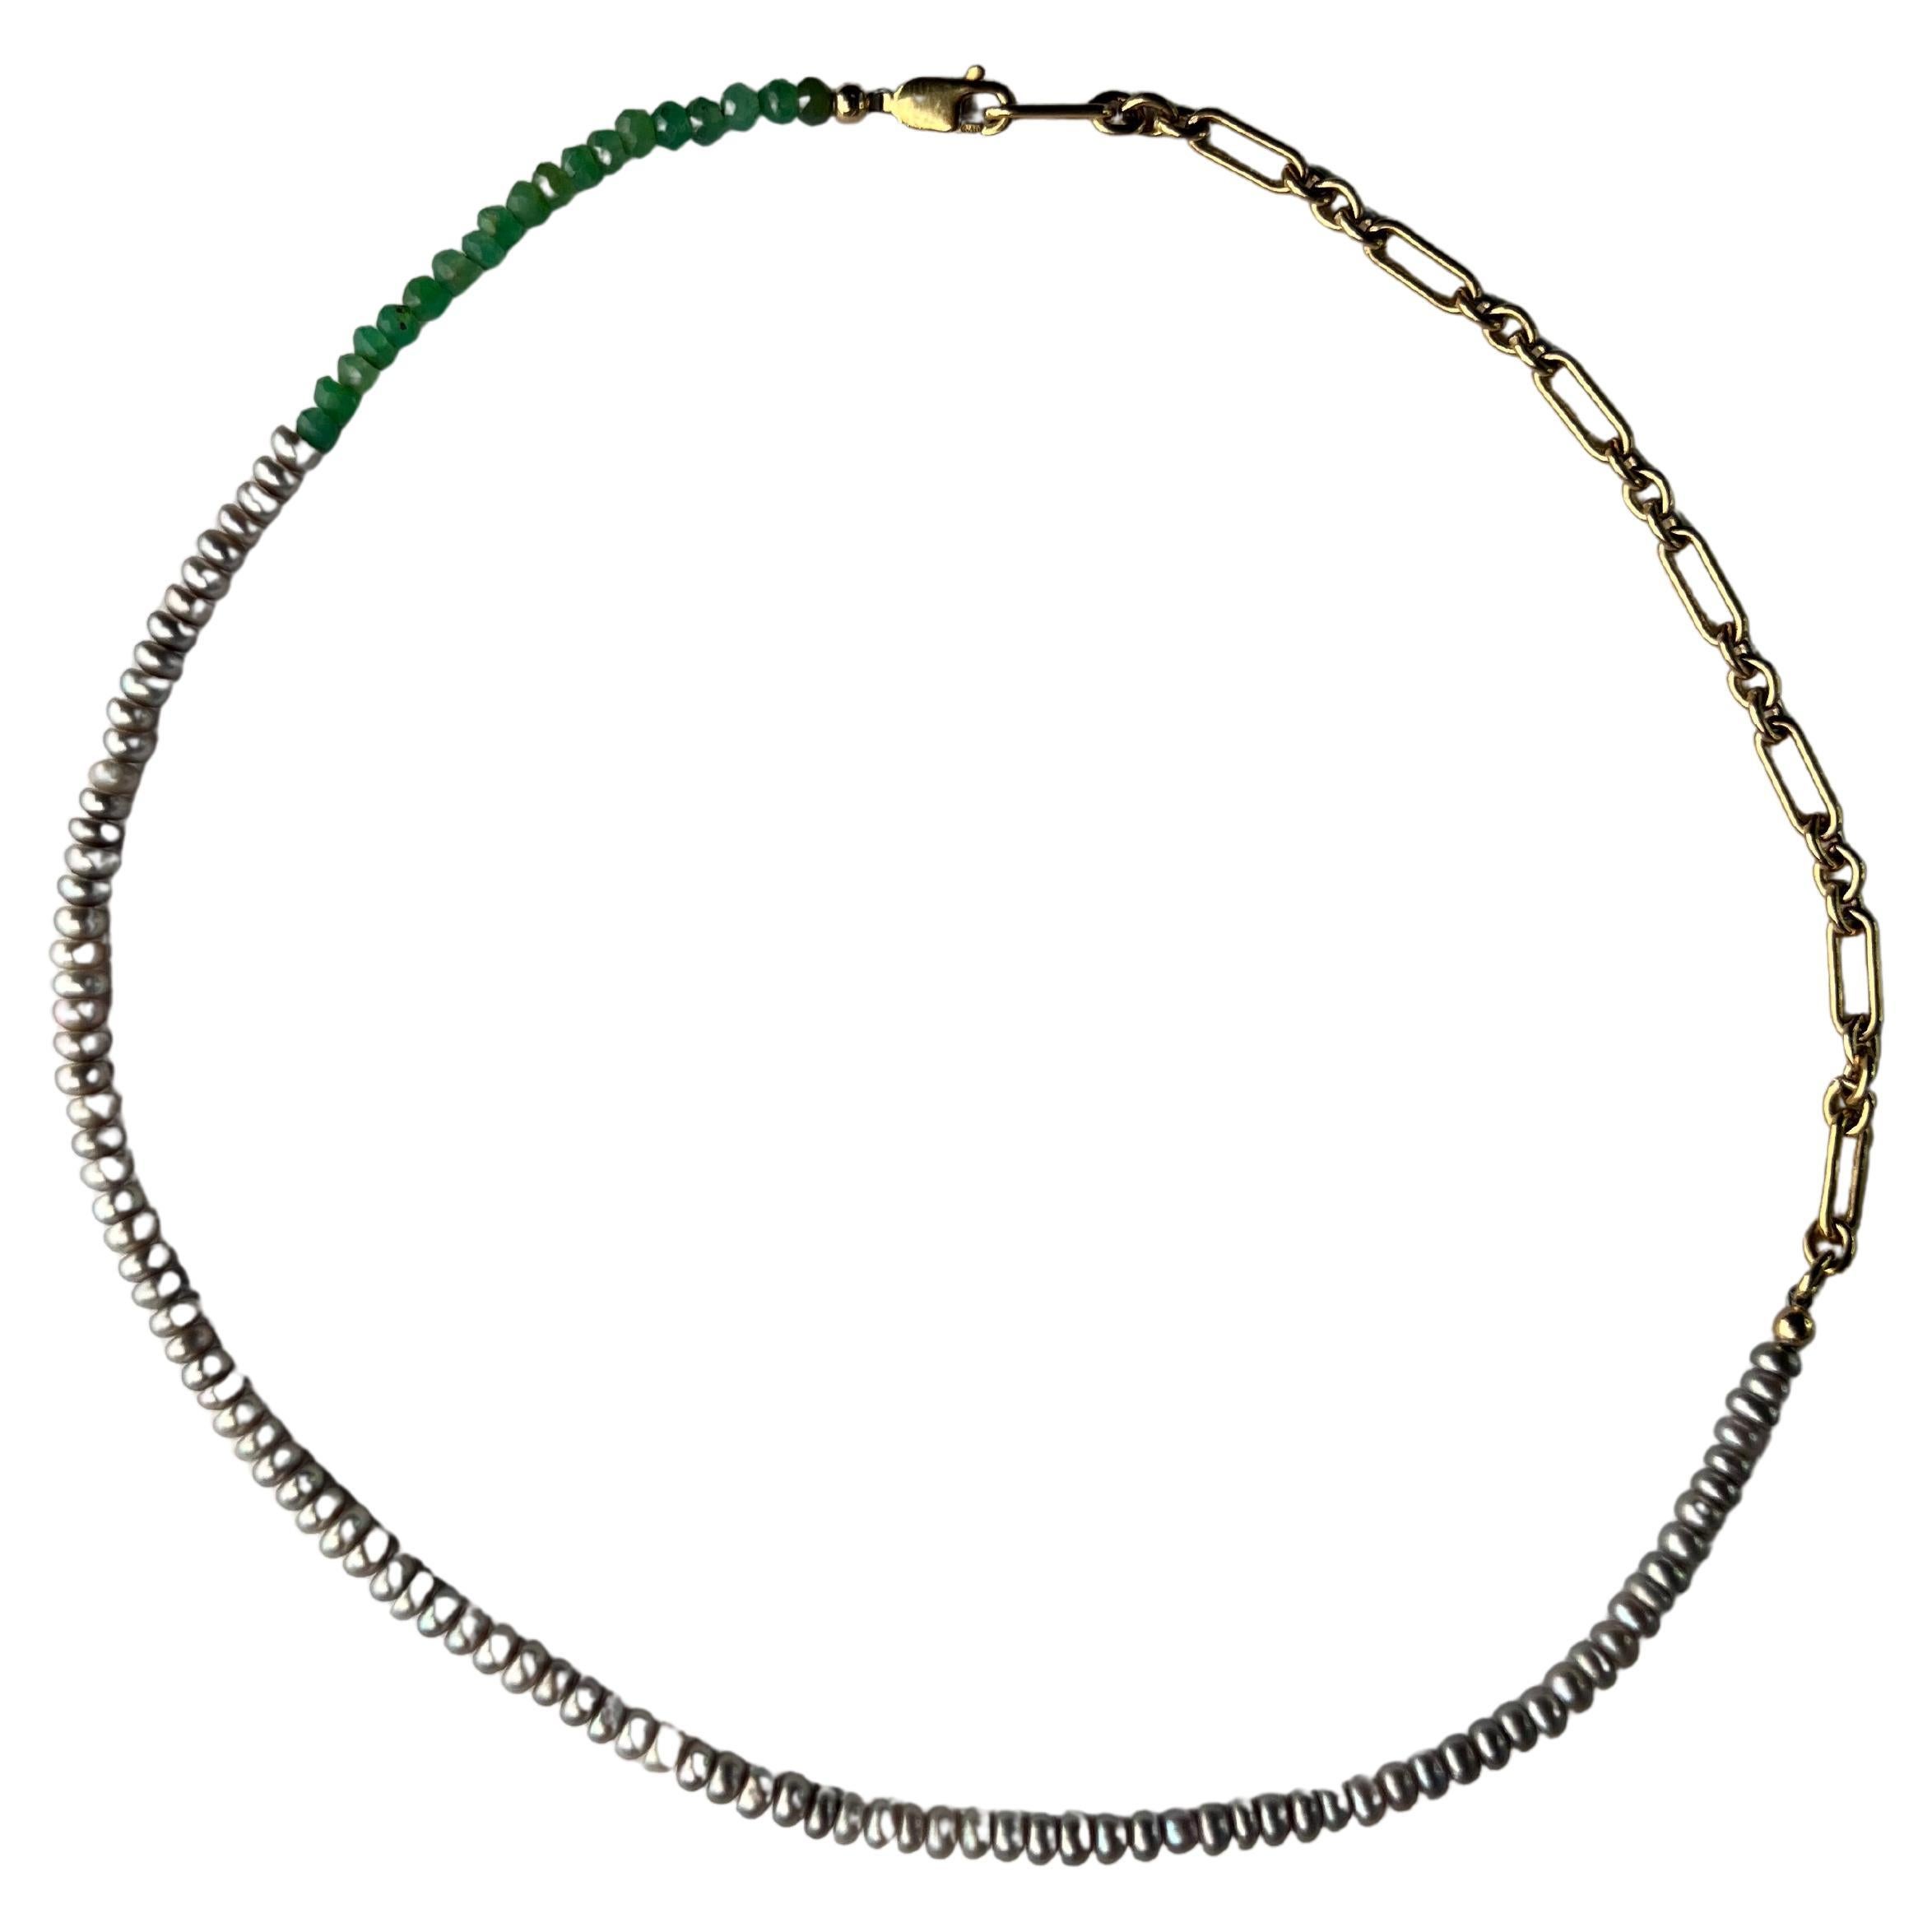 Collier de perles Collier ras du cou en perles d'argent et turquoise par J Dauphin

collier de perles d'eau douce gris argenté avec chrysophrase 